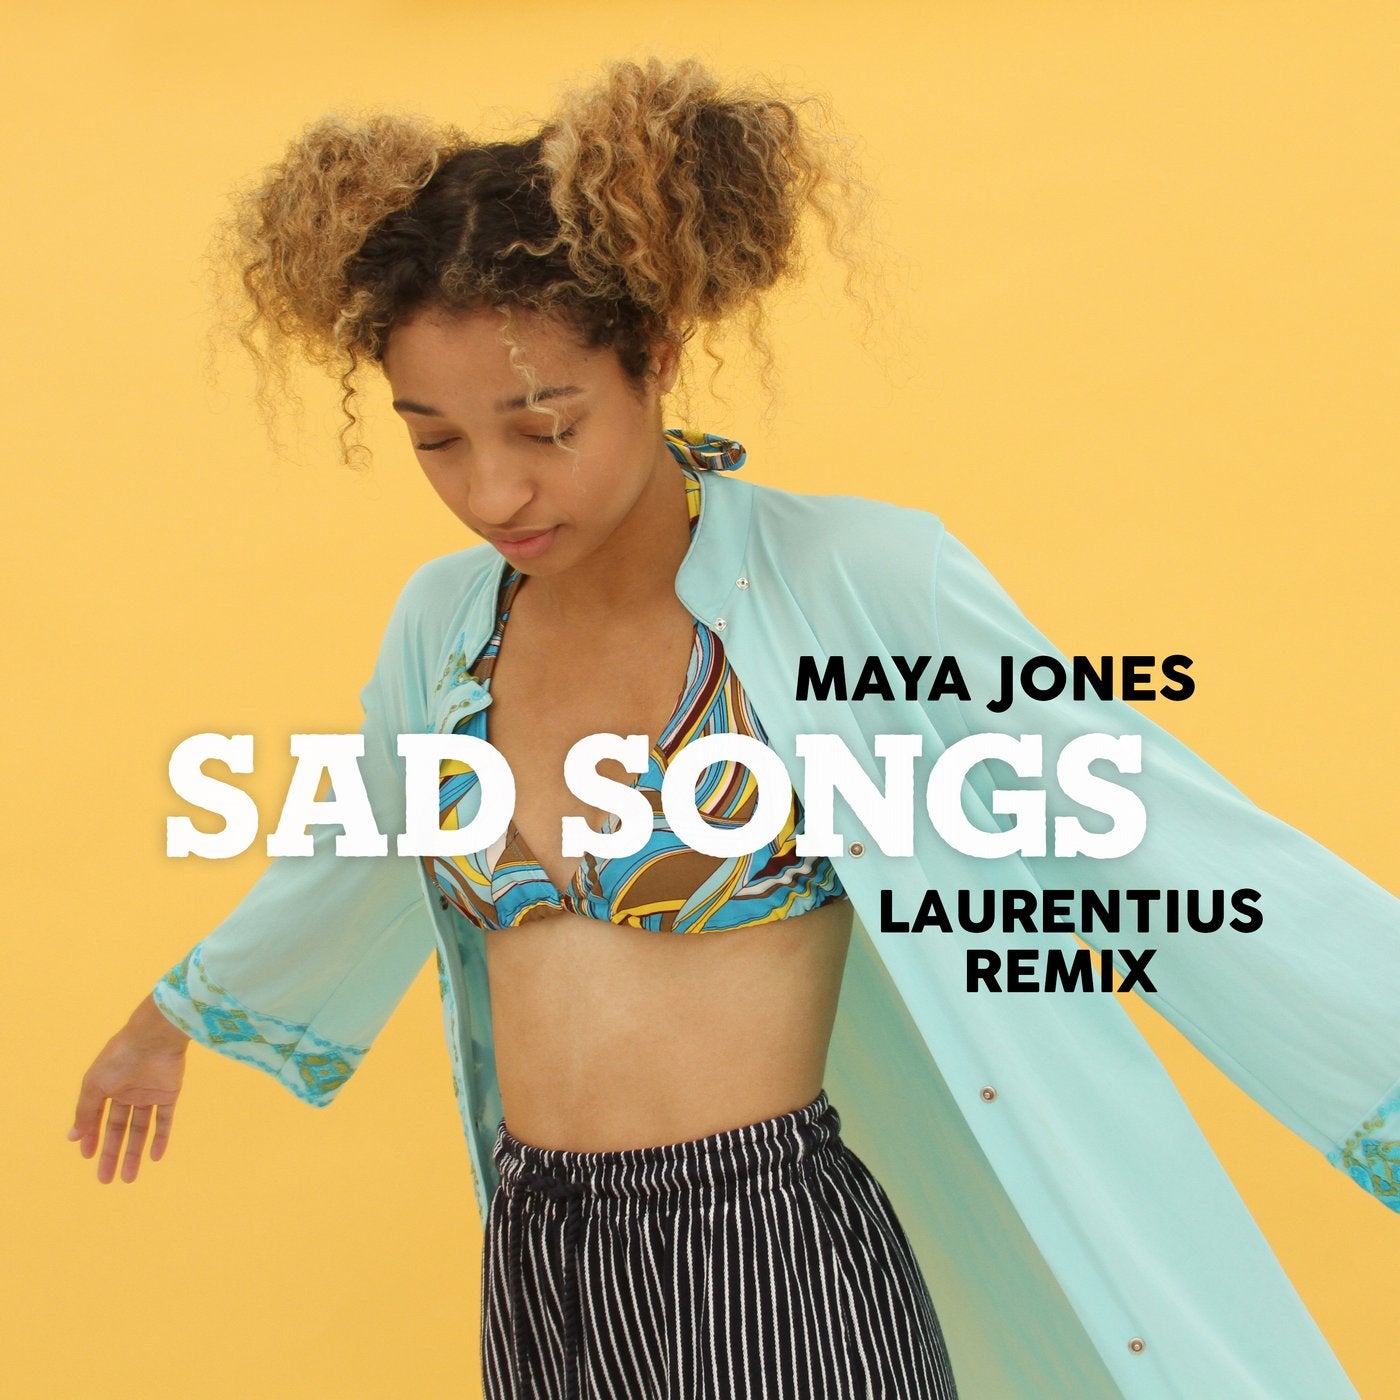 Sad Songs (Laurentius Remix)